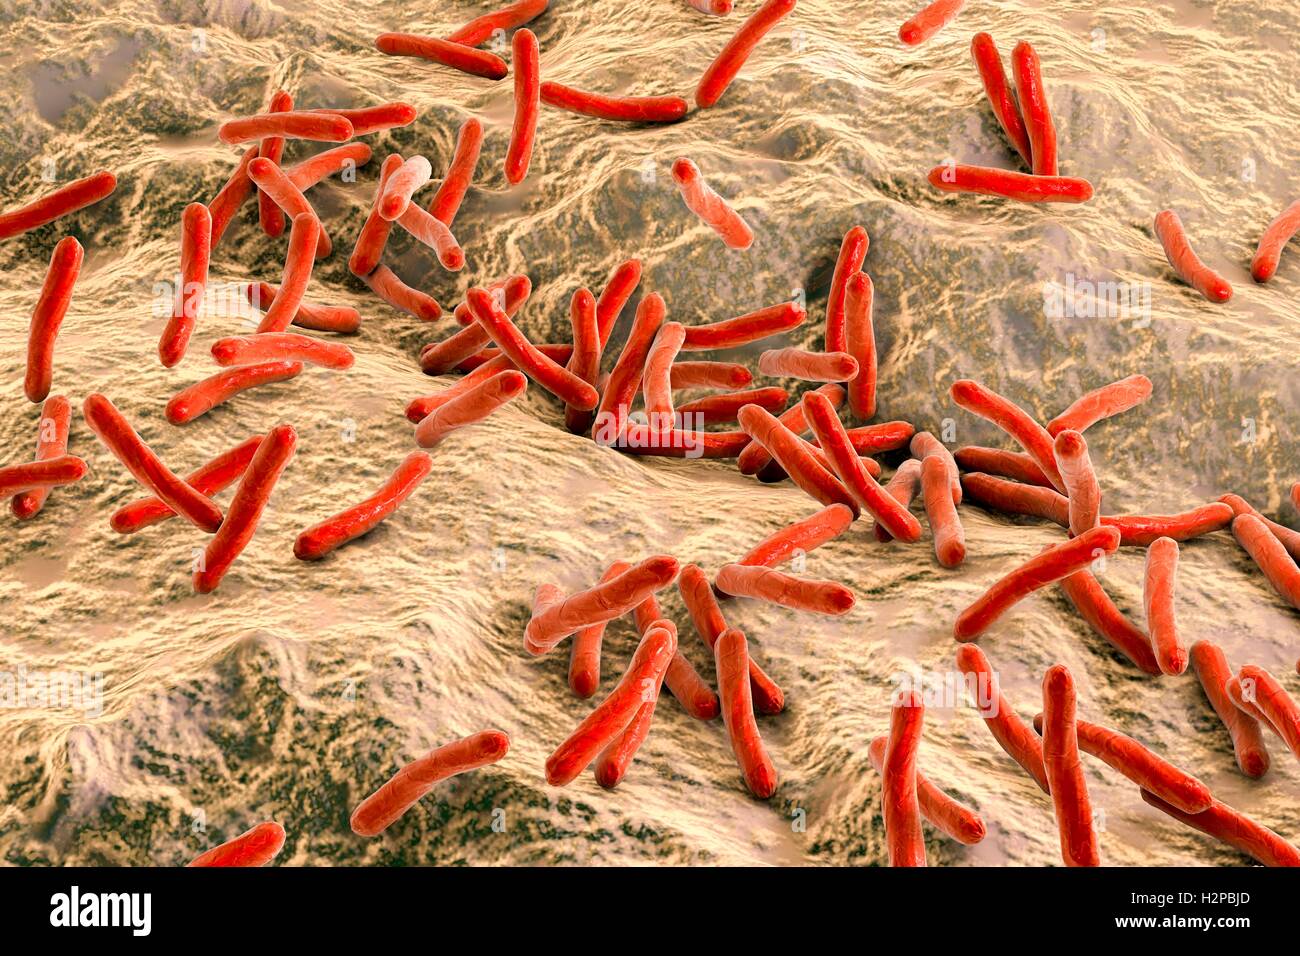 Lepra-Bakterien. Computer Grafik von Mycobacterium Leprae Bakterien, die grampositiven stabförmigen Bakterien die Krankheit Lepra hervorrufen. Stockfoto